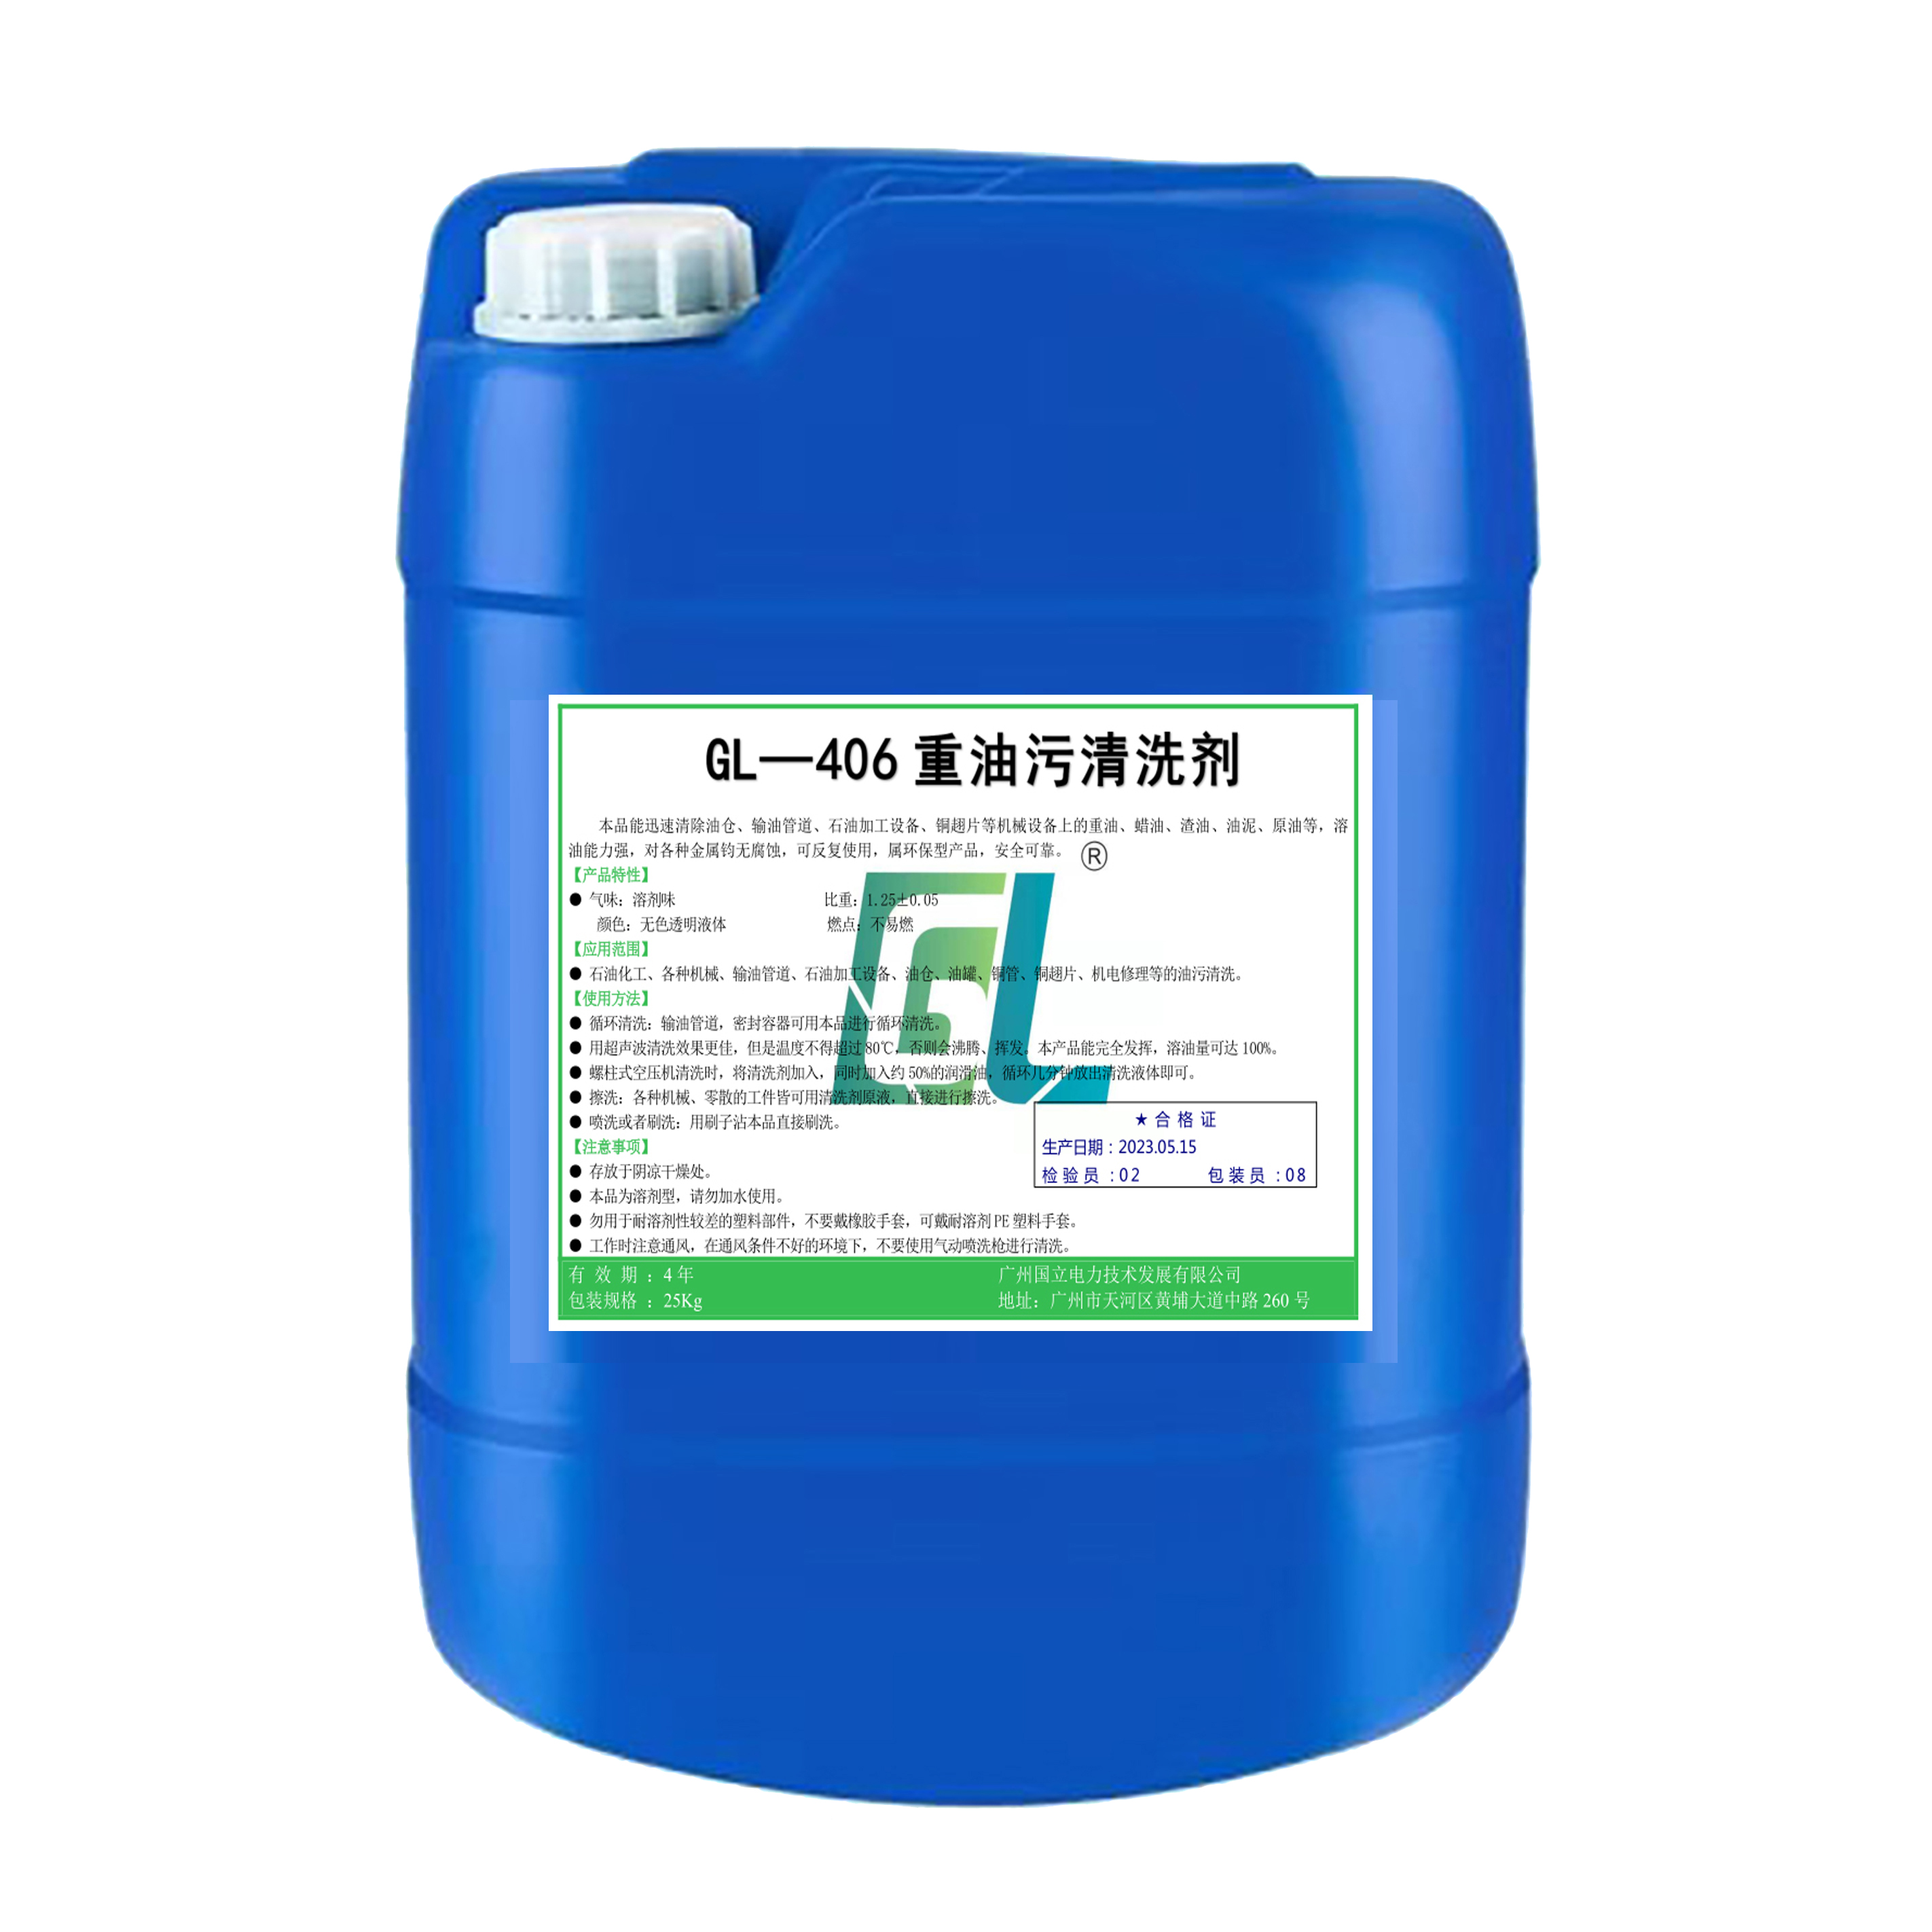 油污清洗 除锈清洗剂 重油污清洗剂 GL—406 25KG/桶